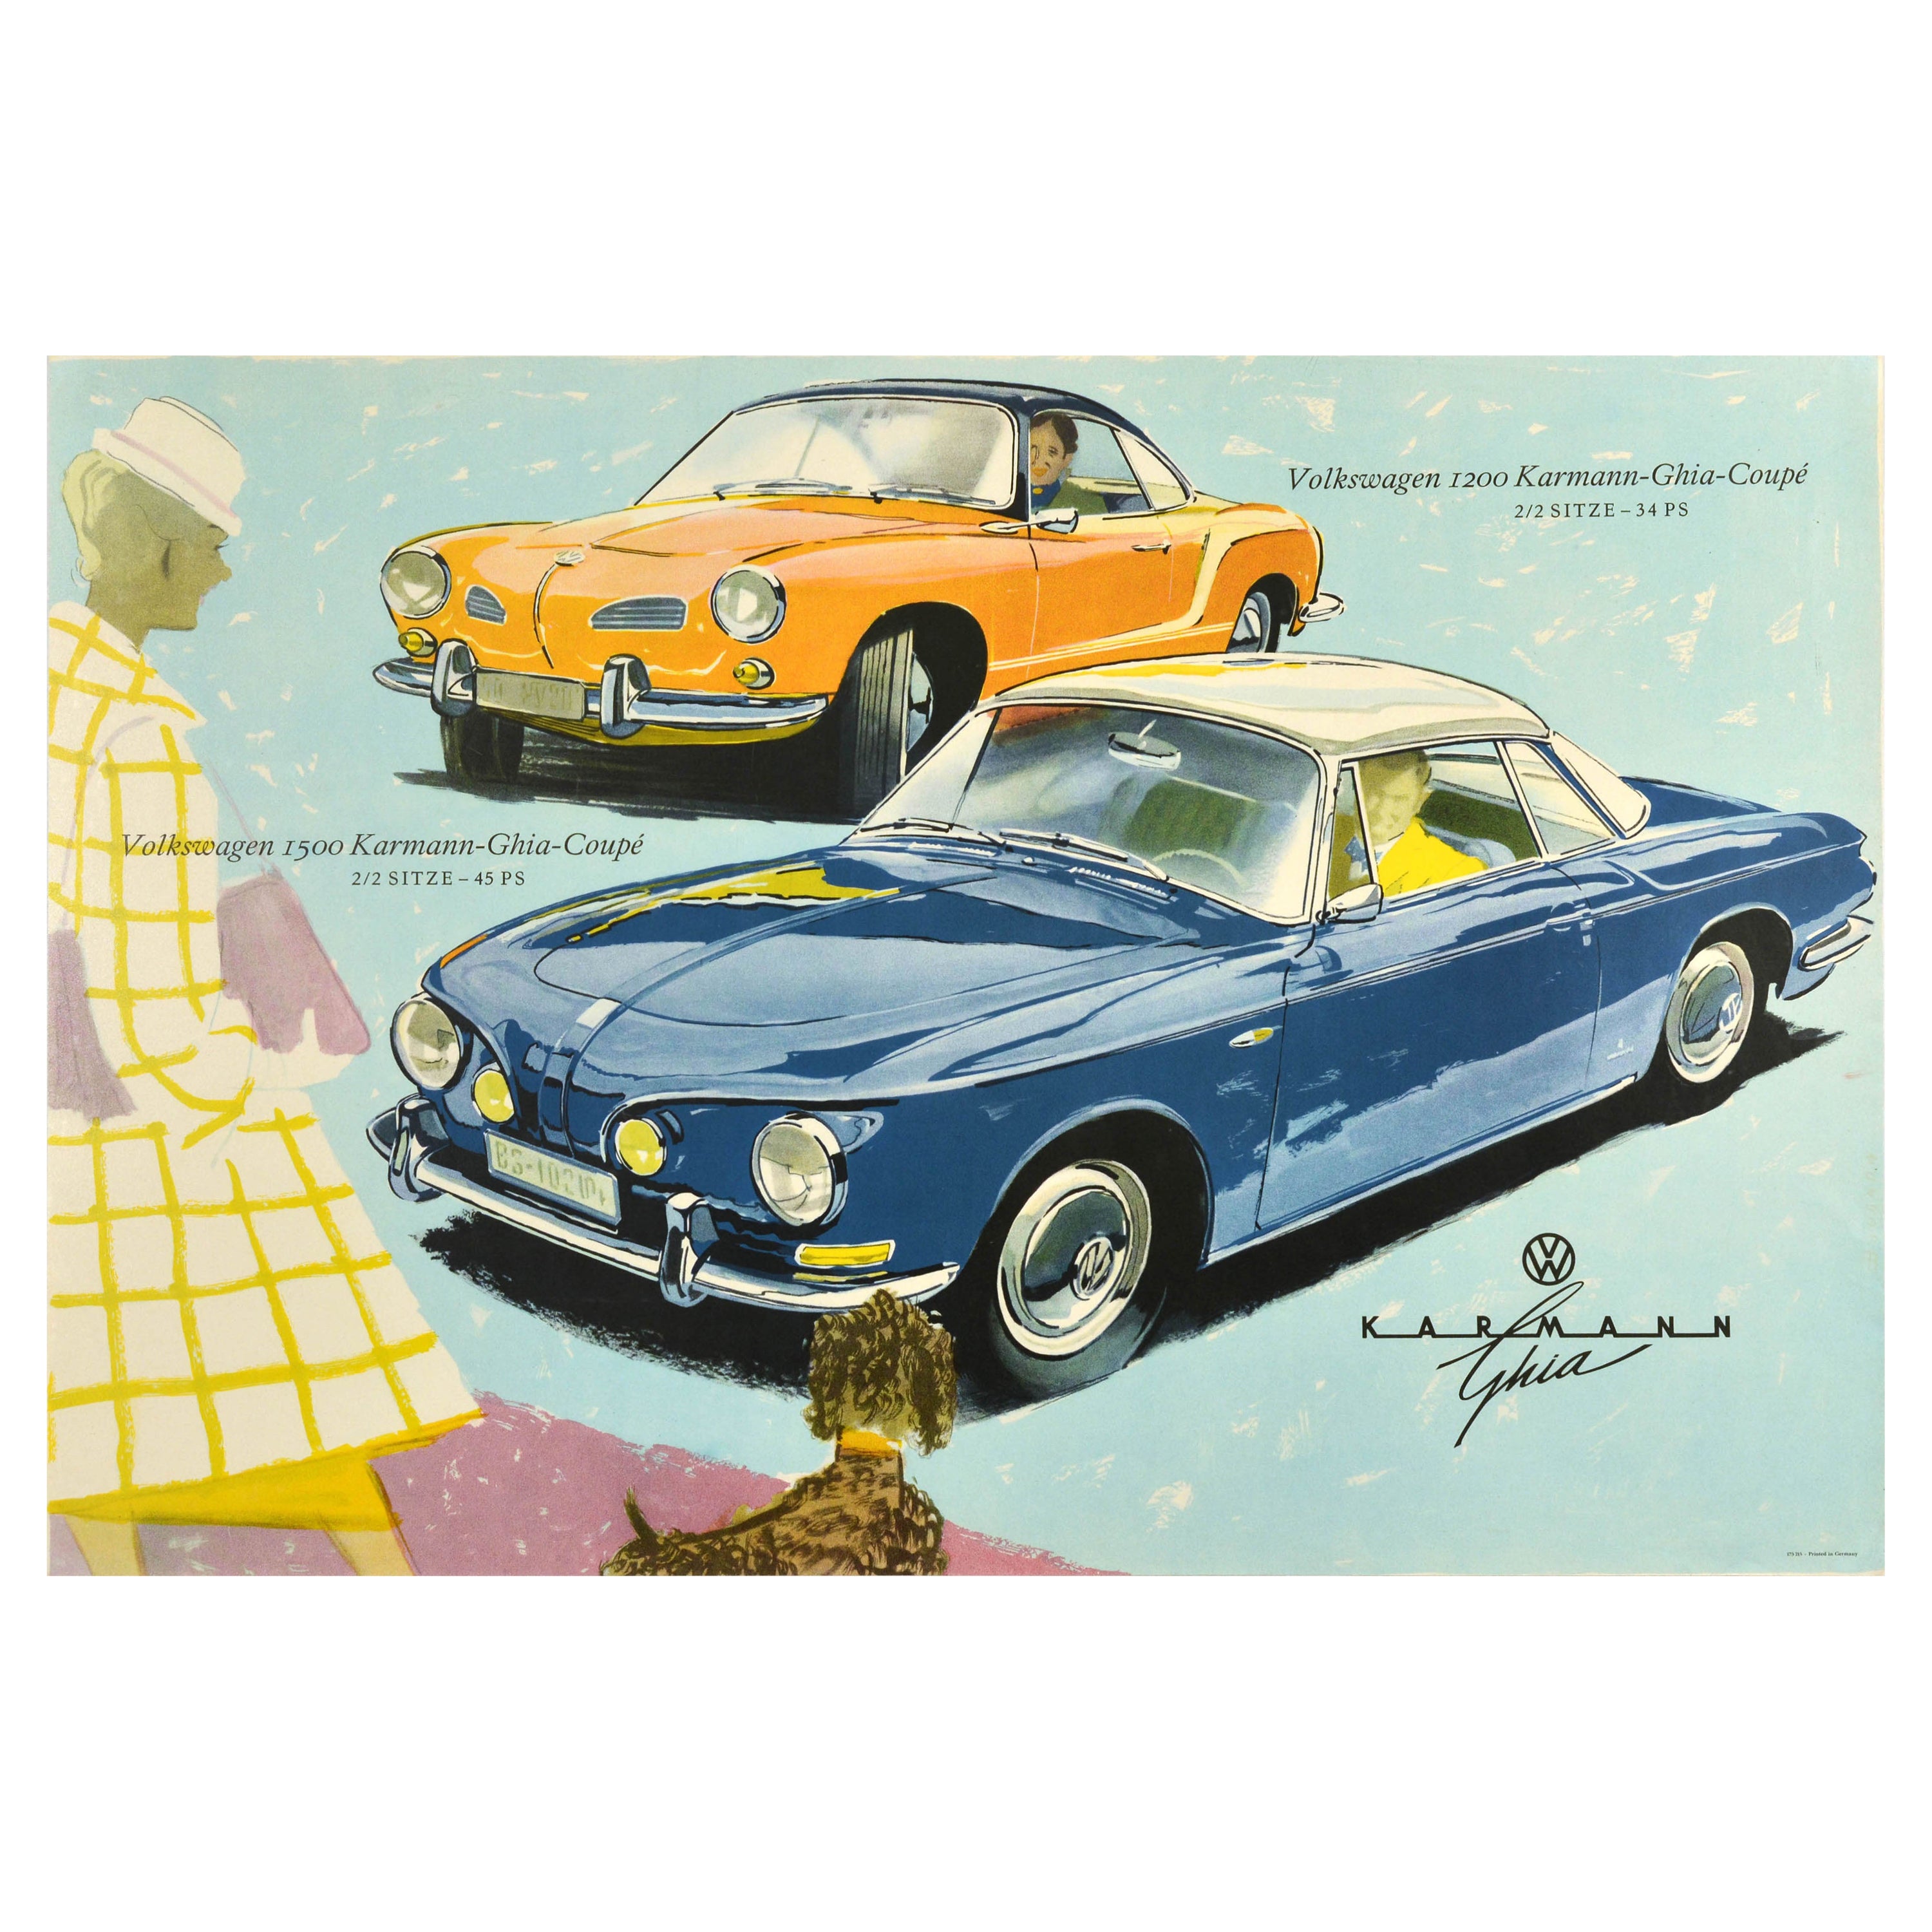 Affiche publicitaire originale de Volkswagen Karmann Ghia Automobile